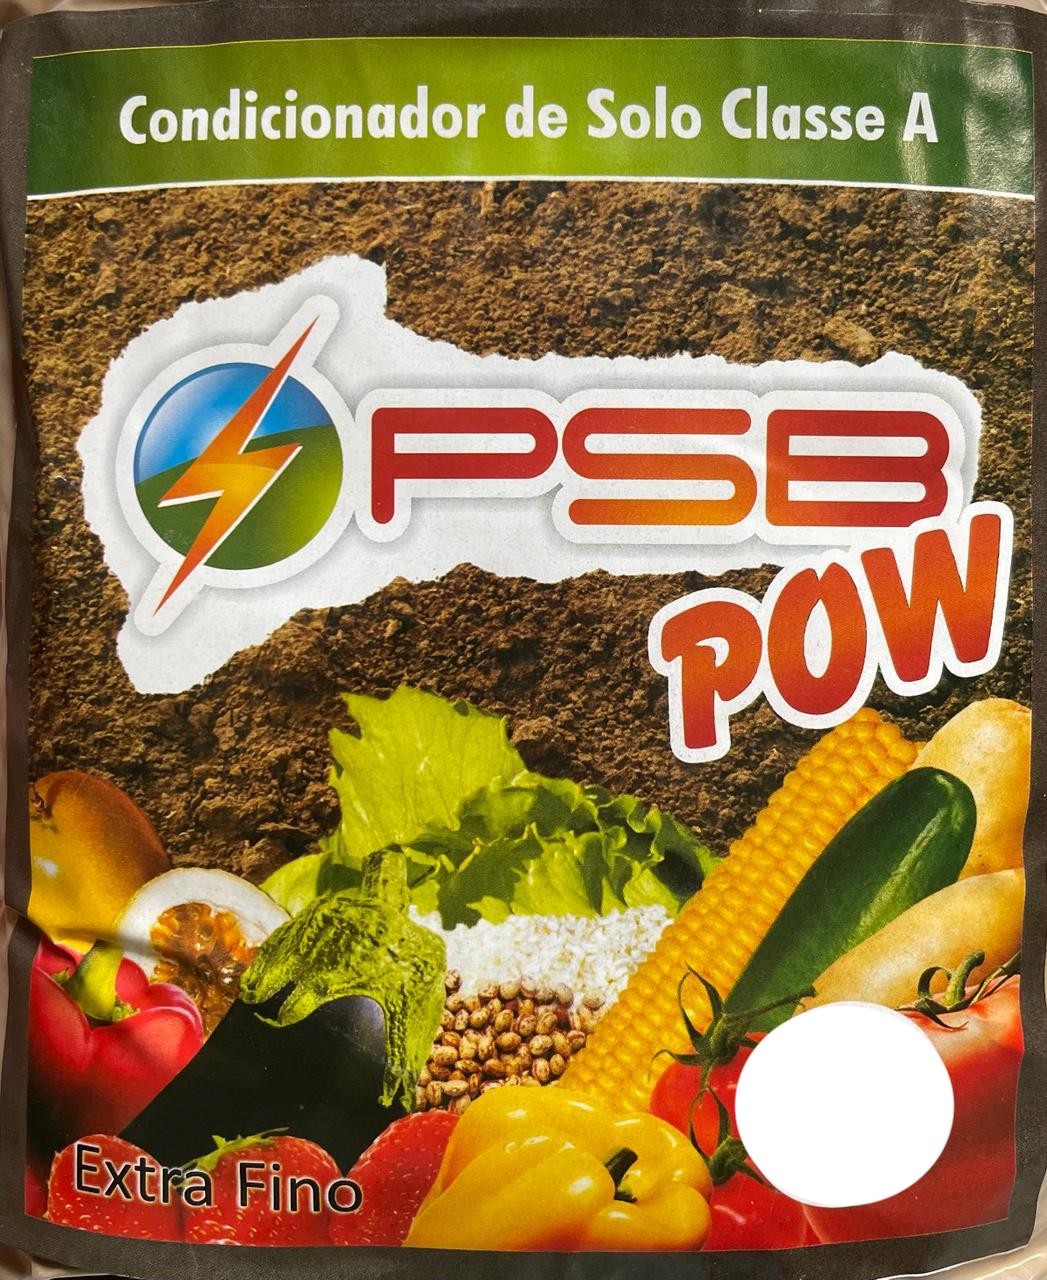 PSB POW 100g - *** BioSymphony em pó ***